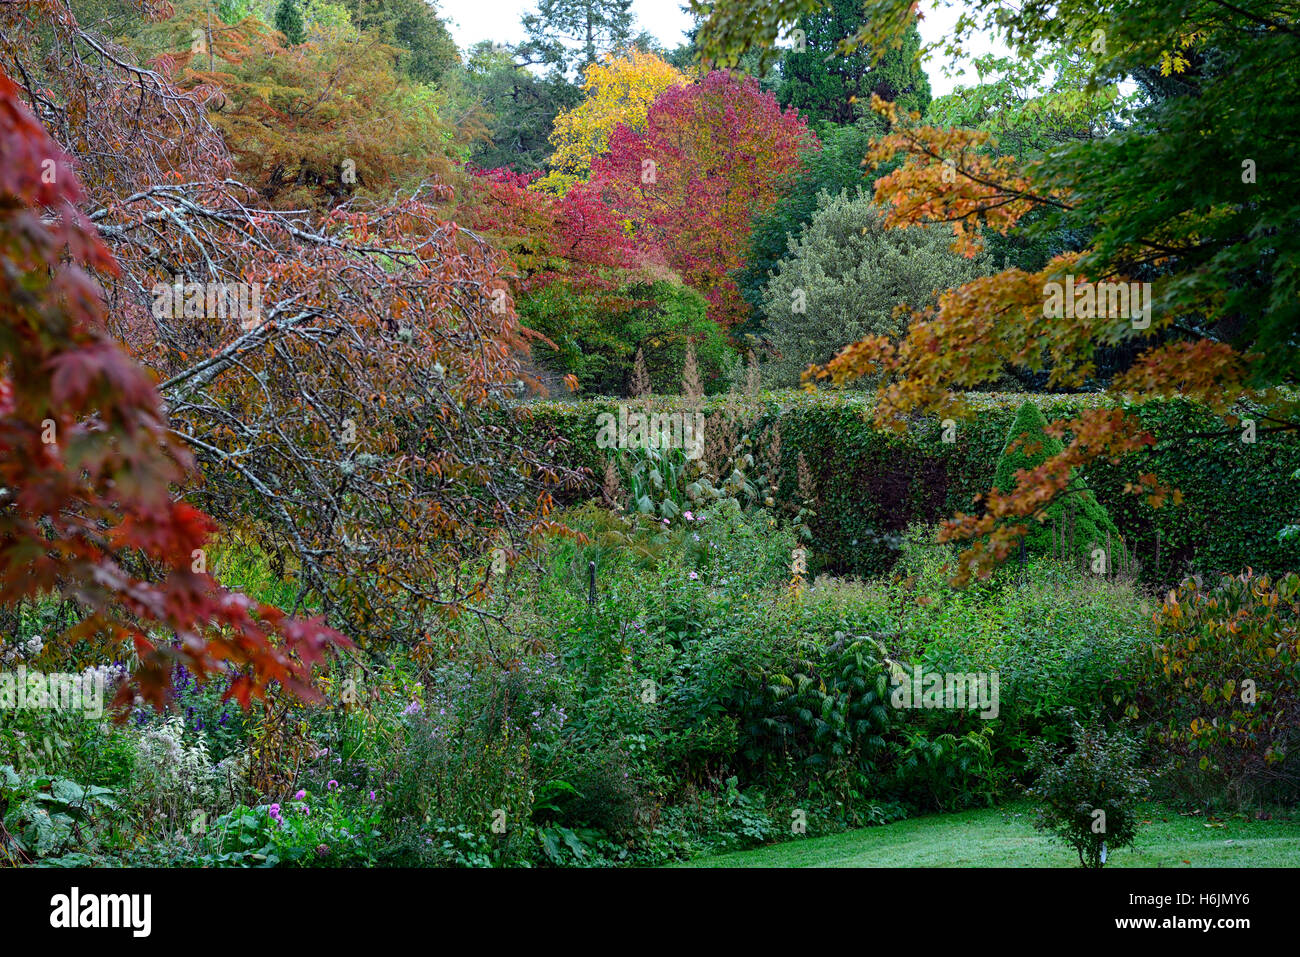 Acer alberi ad albero foglie rosse foglie di autunno colori autunnali colori per cambiare mount usher giardini floreali RM Foto Stock